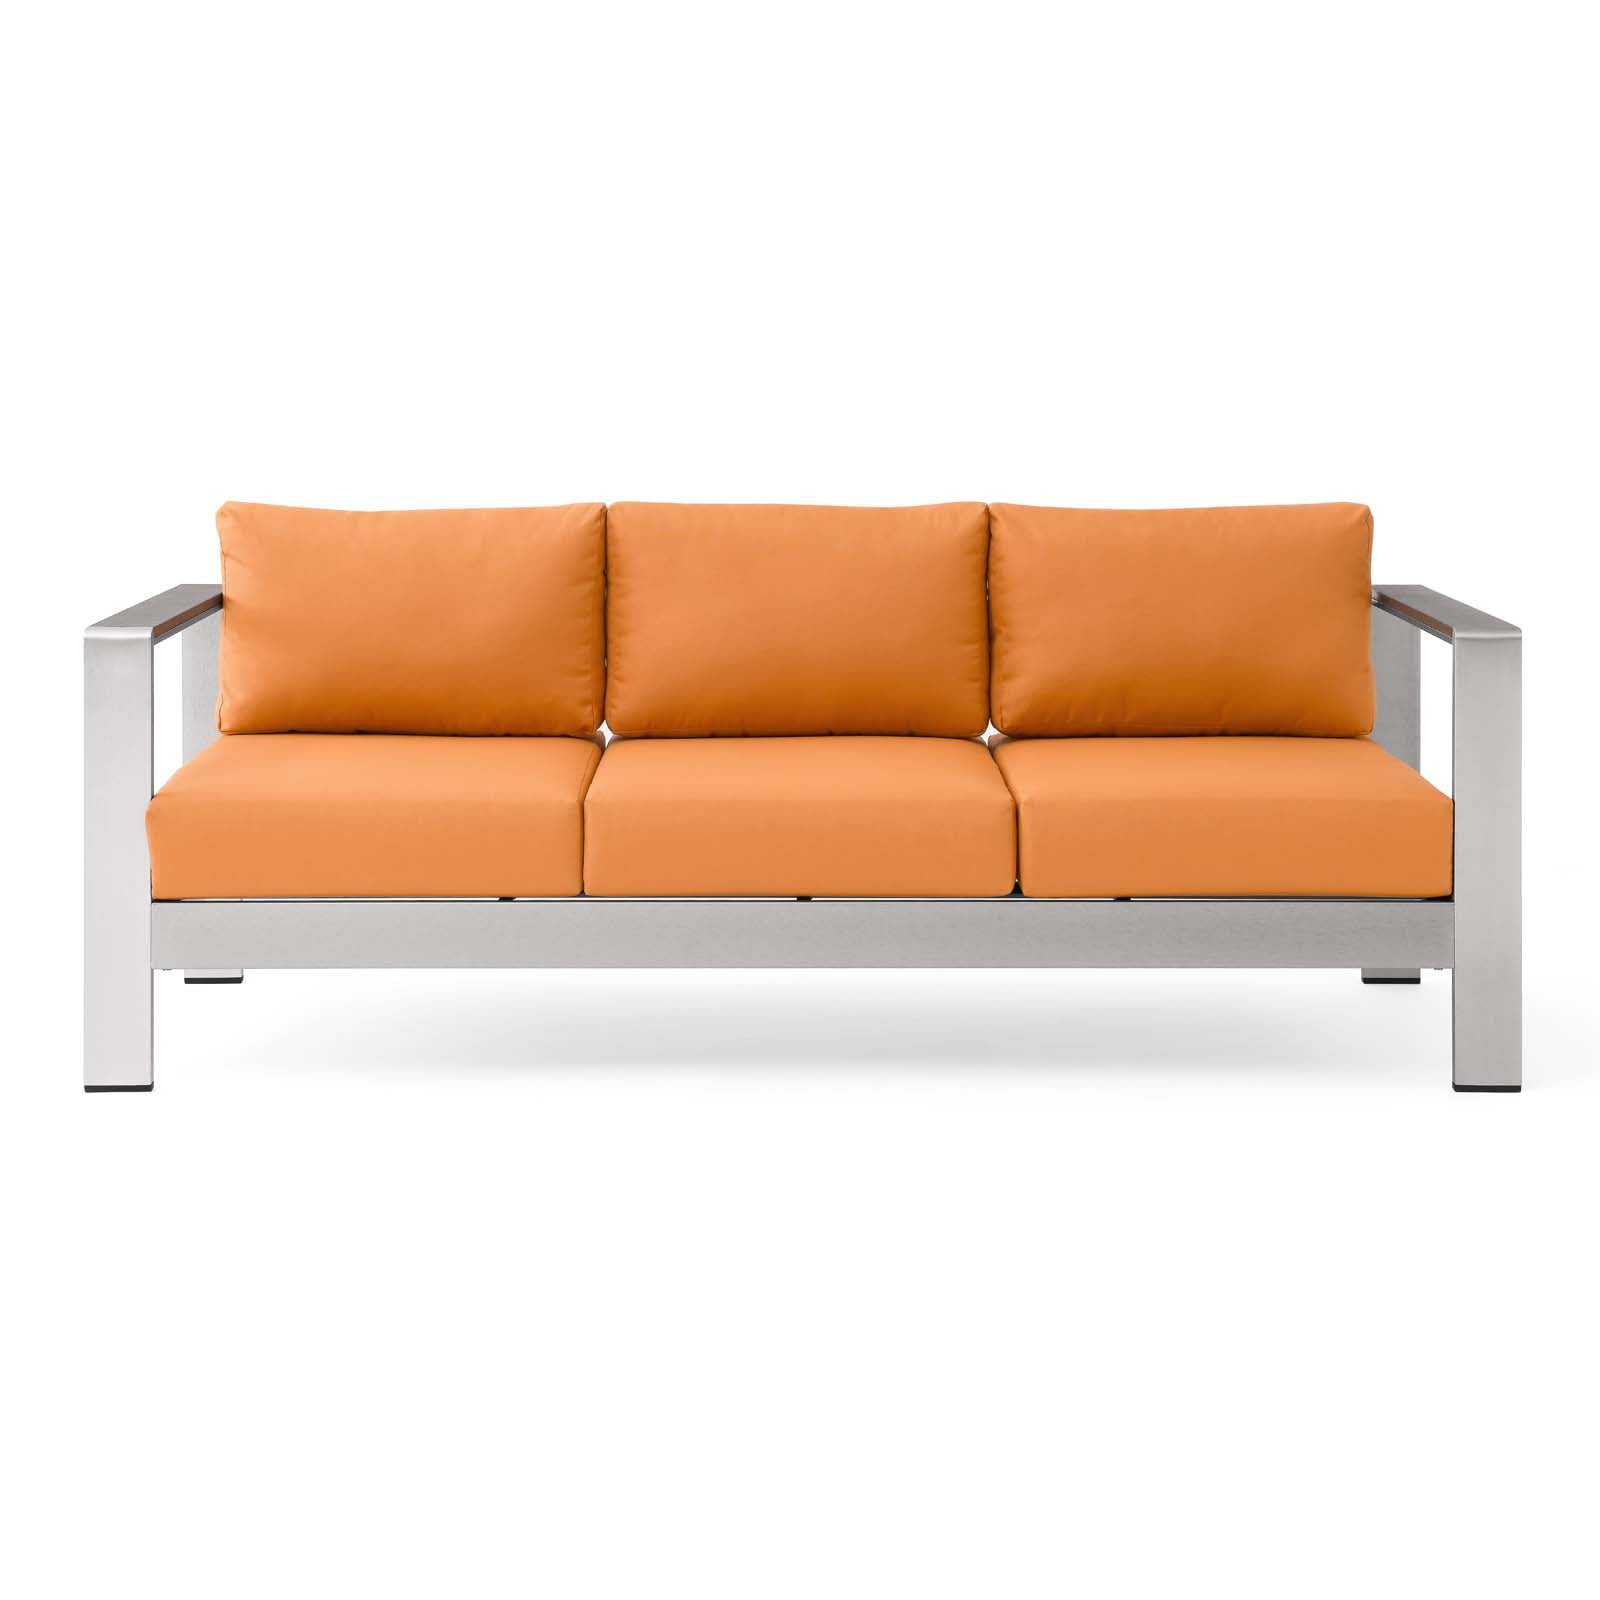 Modway Outdoor Sofas - Shore Outdoor Patio Aluminum Sofa Silver Orange